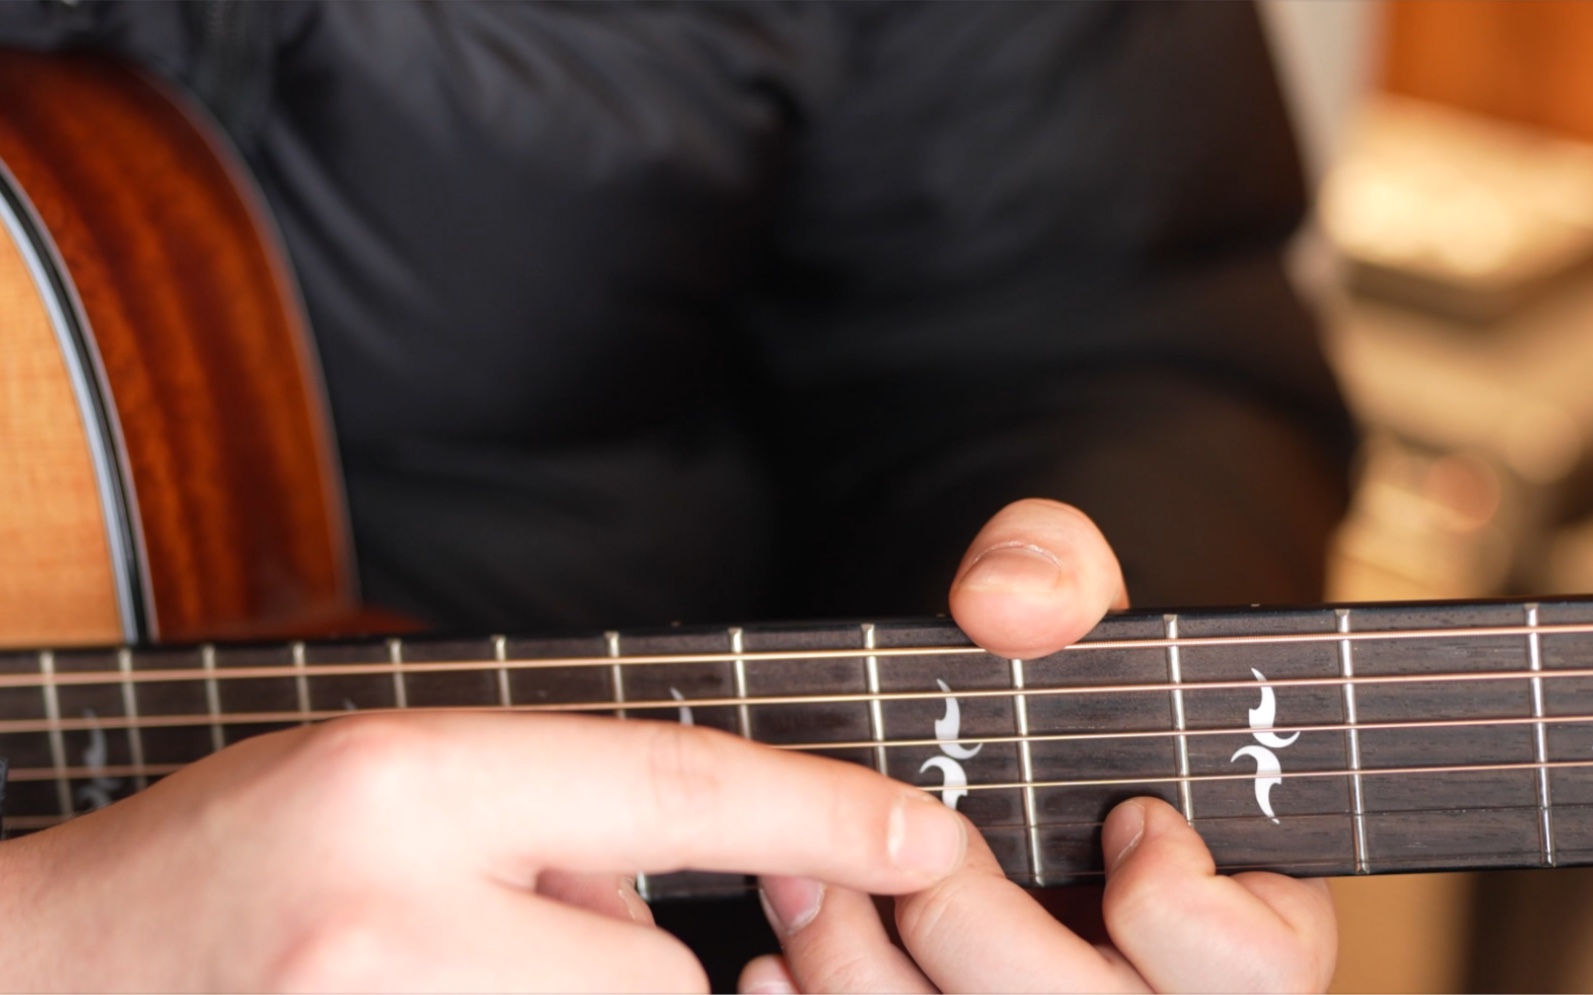 今天给大家分享一个容易的吉他技巧:左手击弦